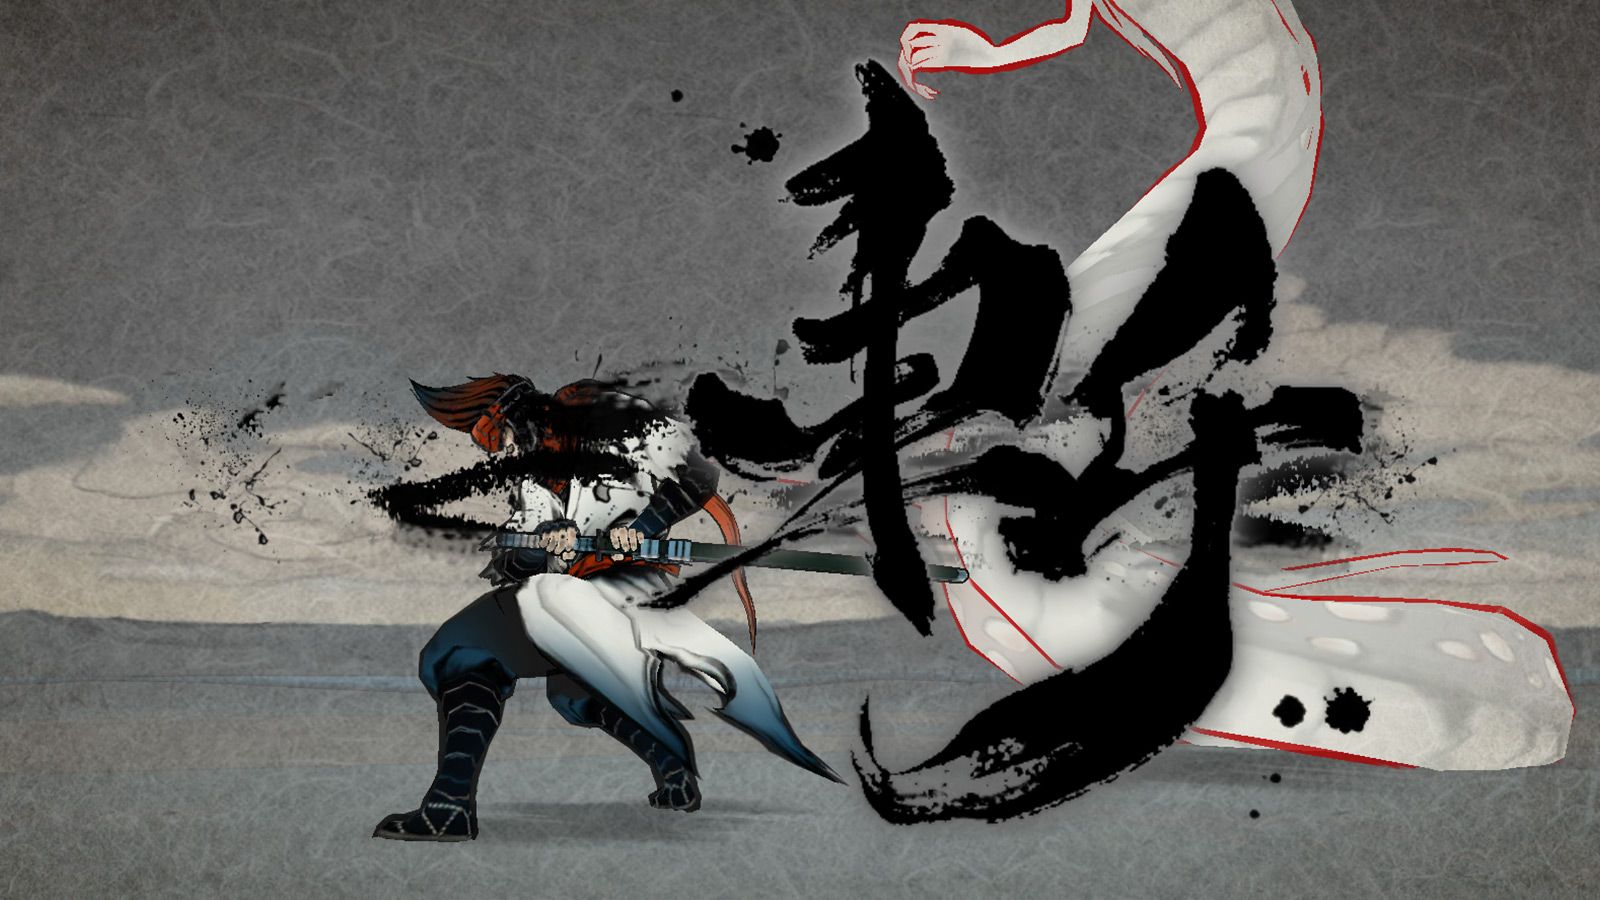 游戏以日本中世纪神话故事为背景,妖魔肆虐人间,武士挺身而出征伐